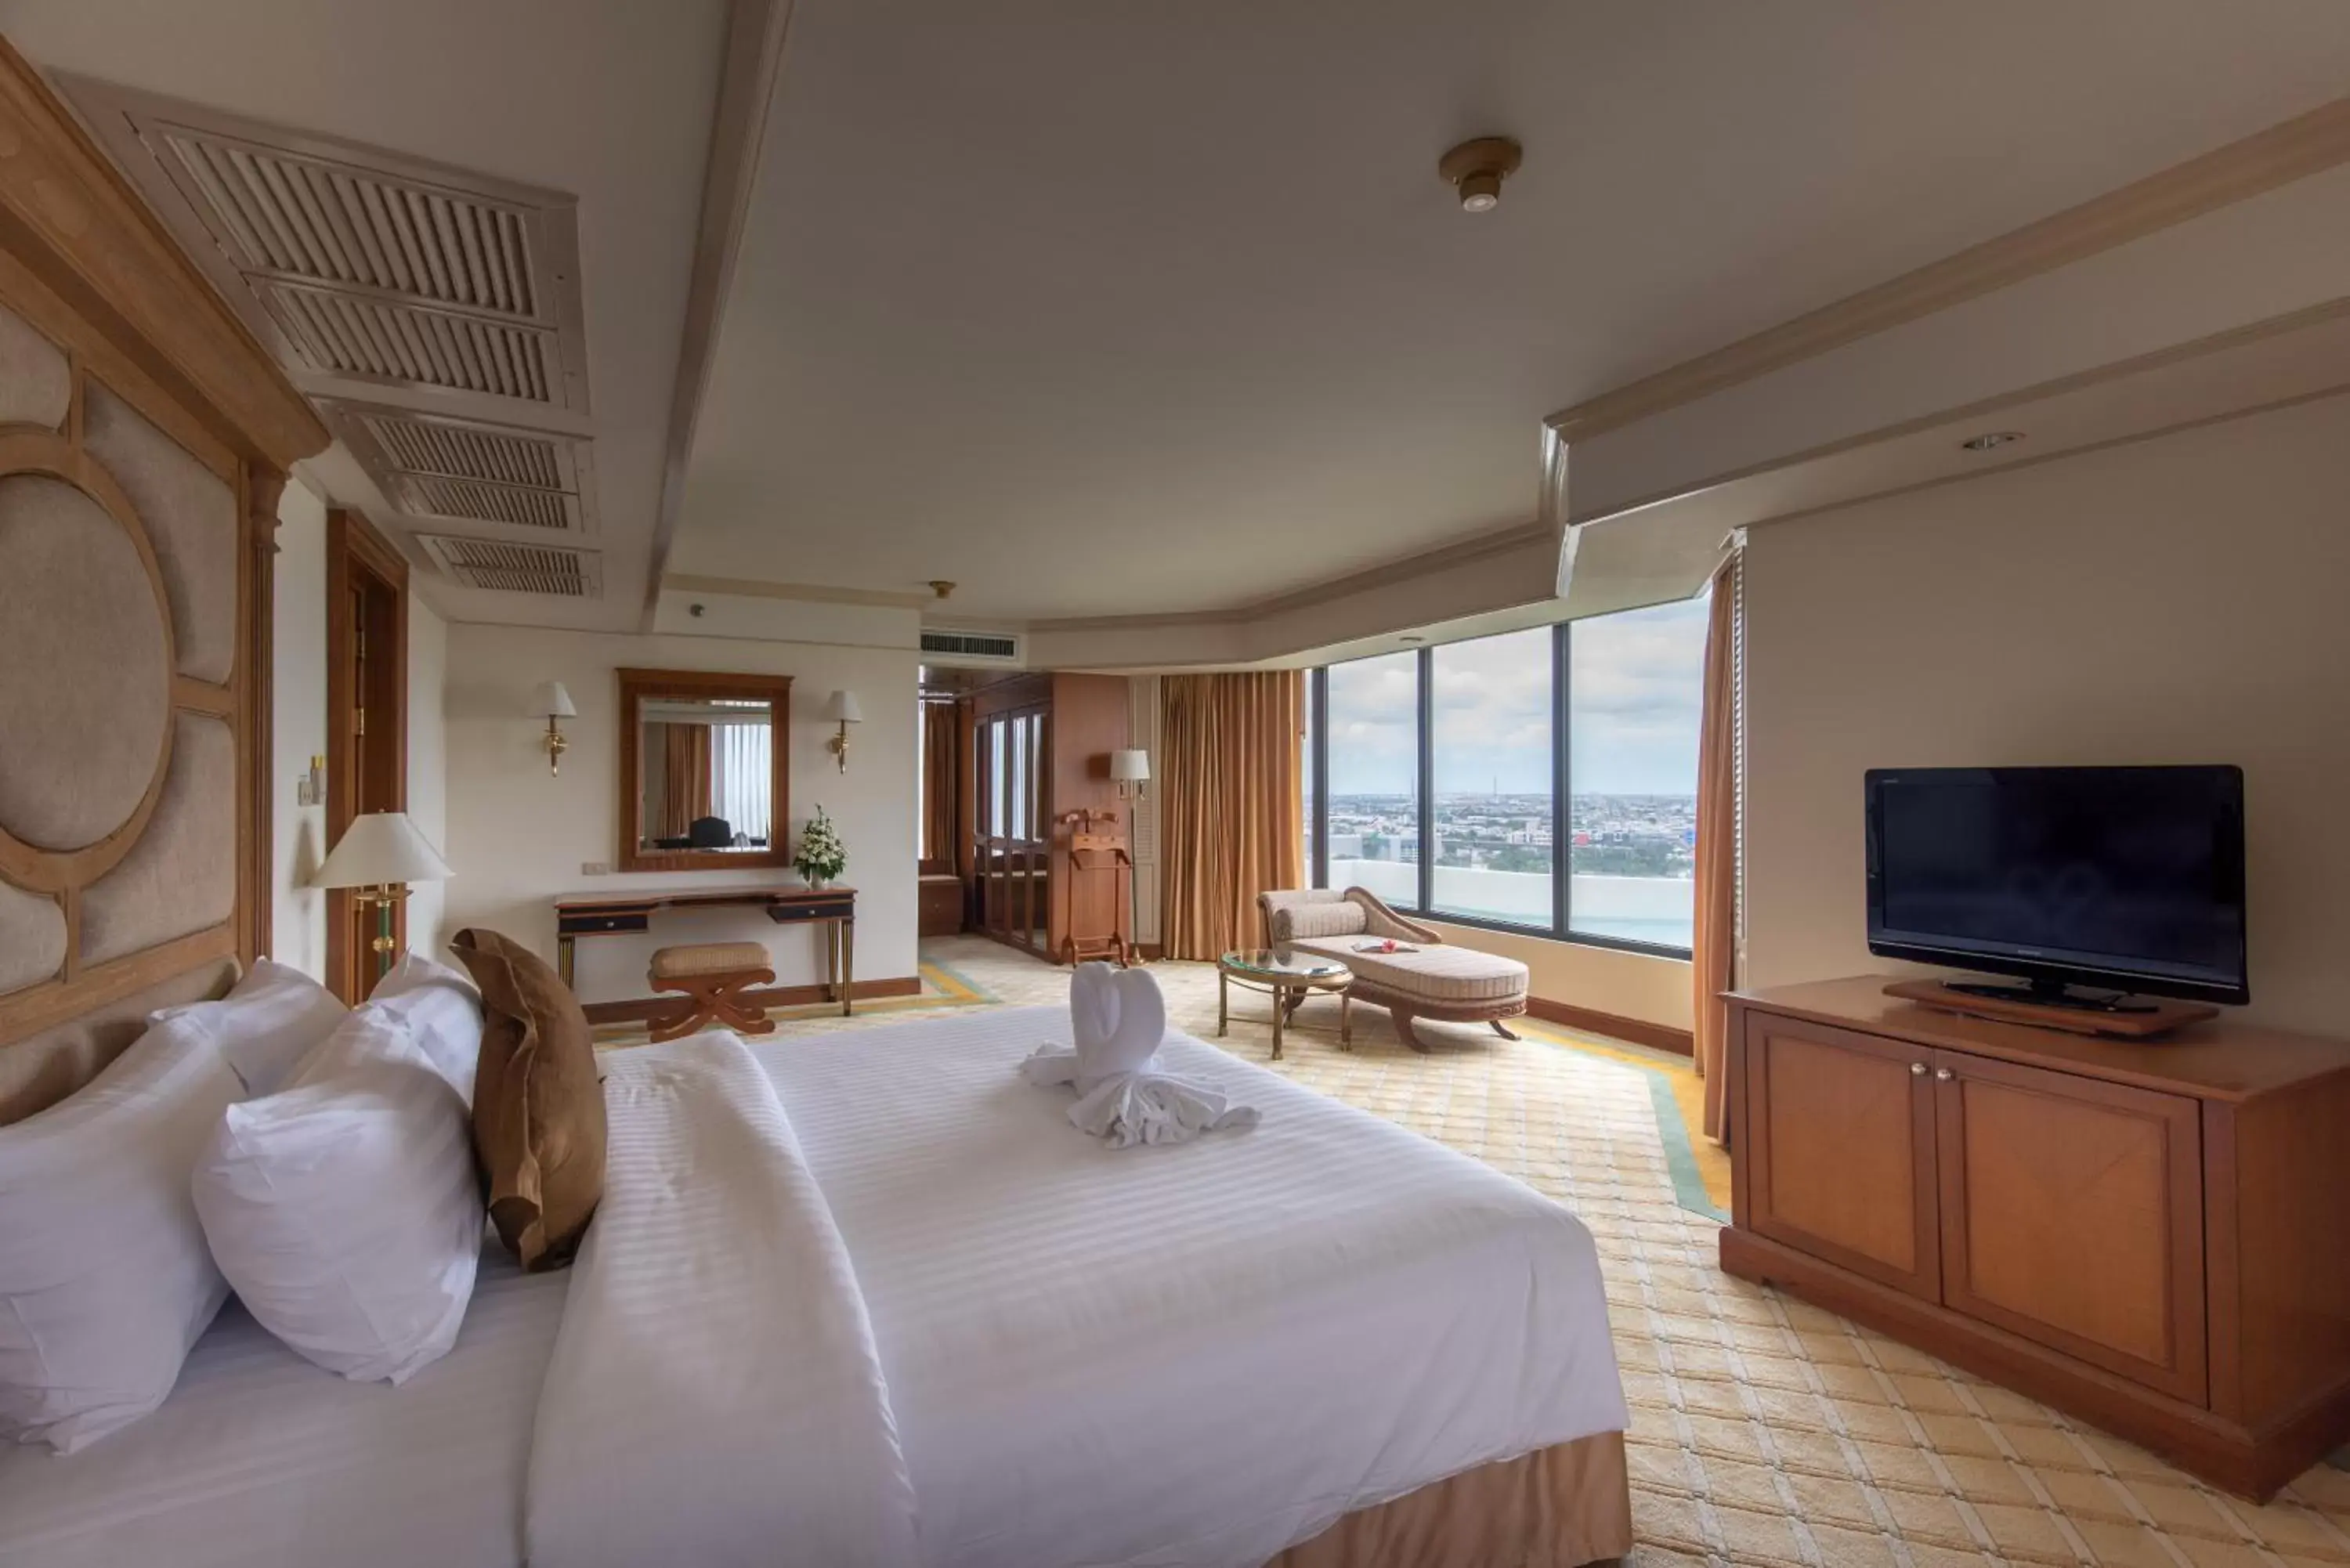 Bedroom in Montien Riverside Hotel Bangkok